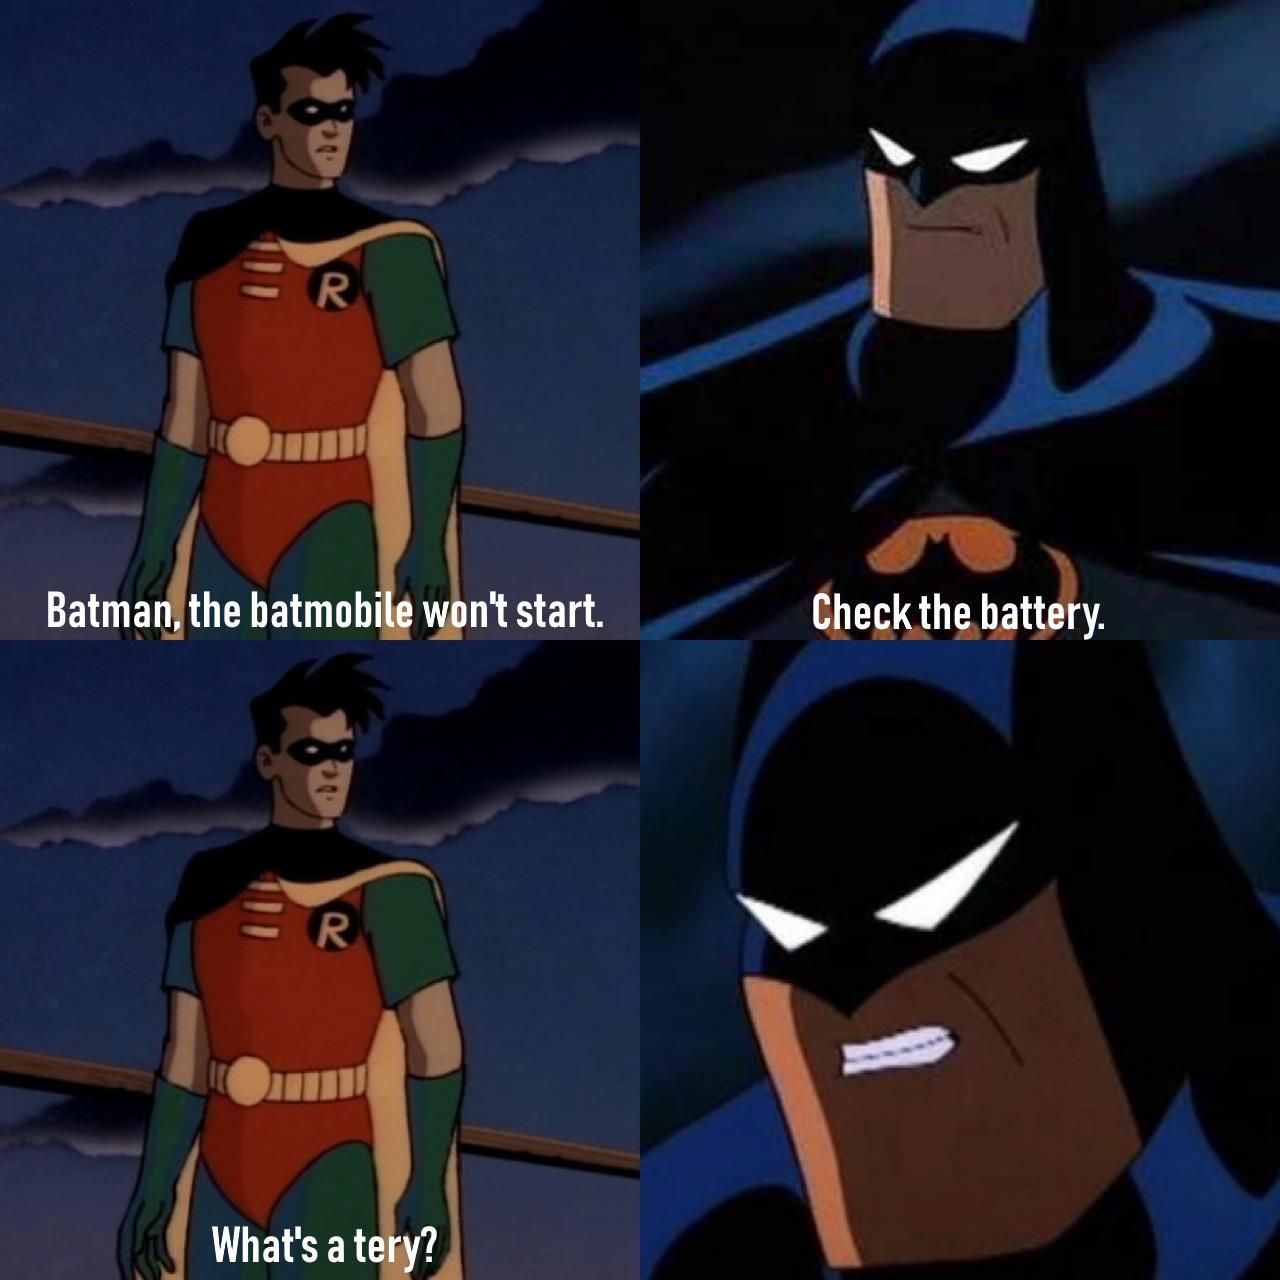 What's a tery, Batman?